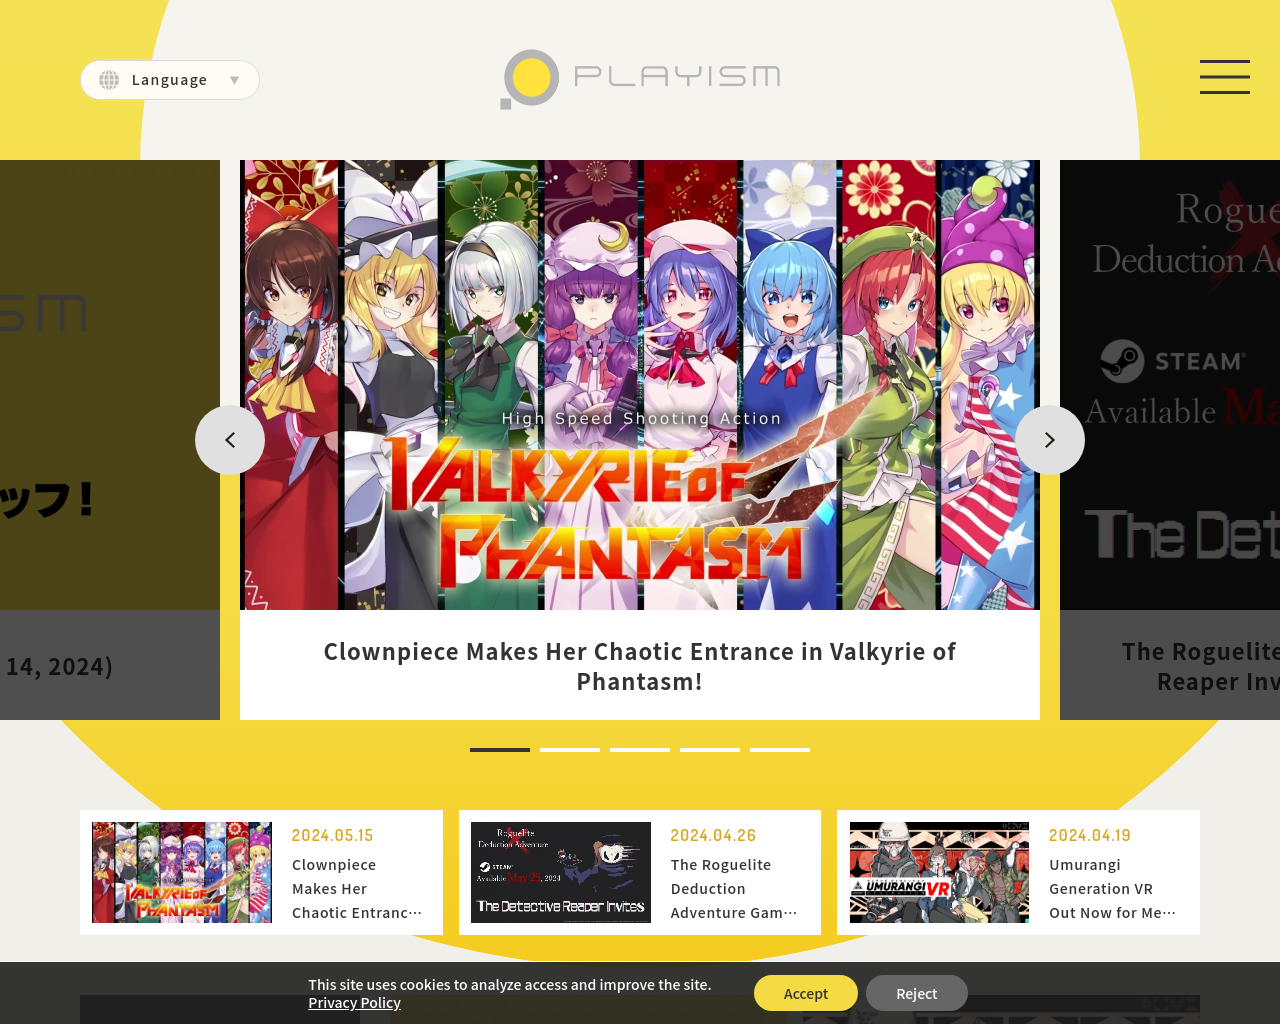 playism-games.com